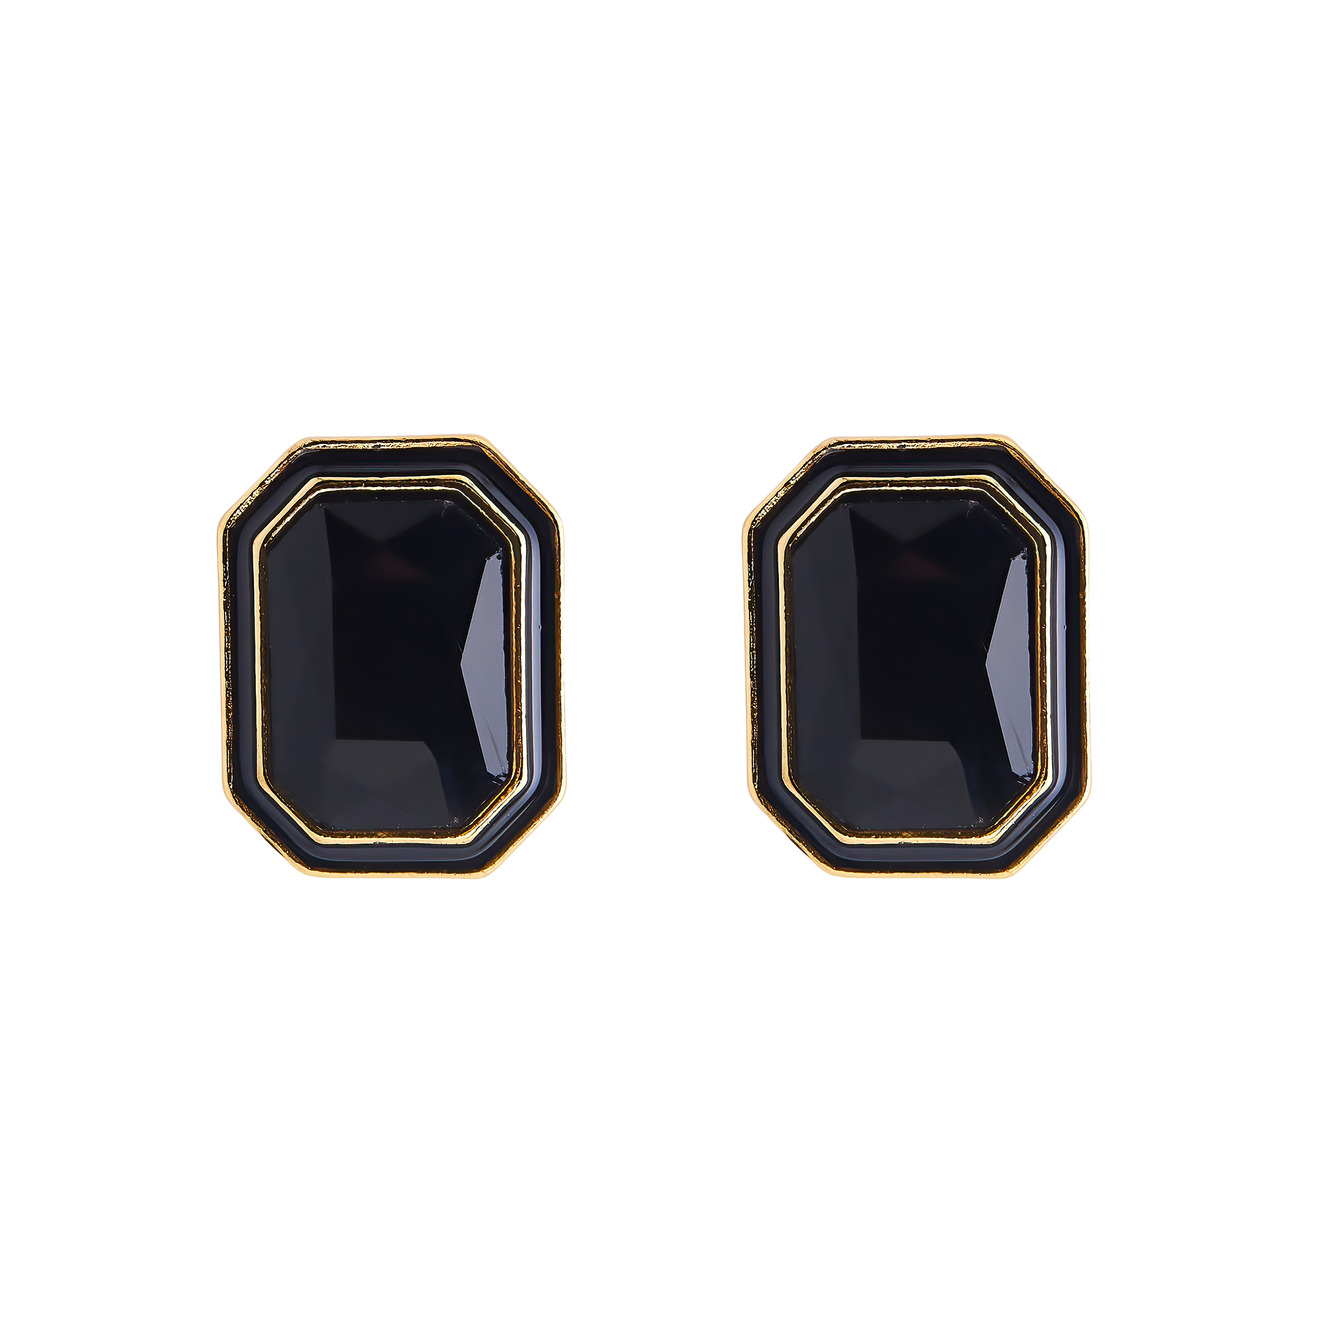 Herald Percy Крупные золотистые серьги с черными кристаллами и черной эмалью цена и фото